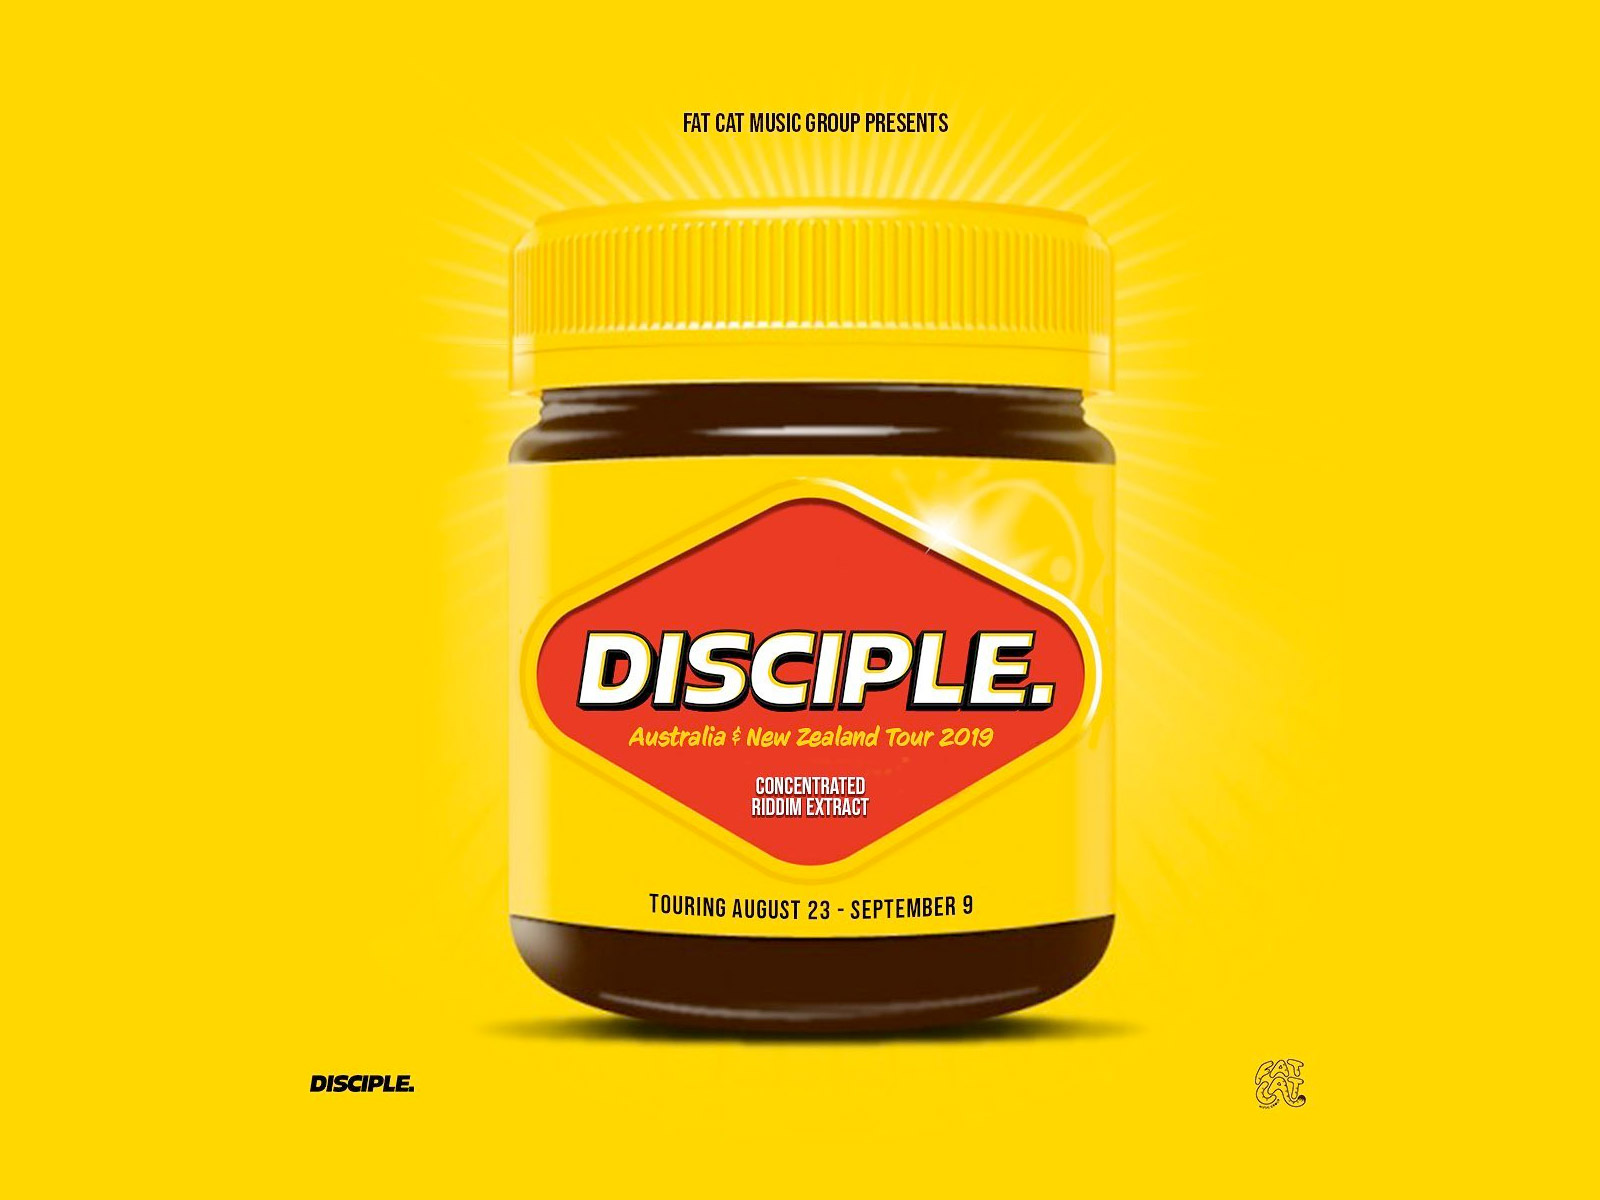 disciple-australia-new-zealand-tour-2019-oz-edm